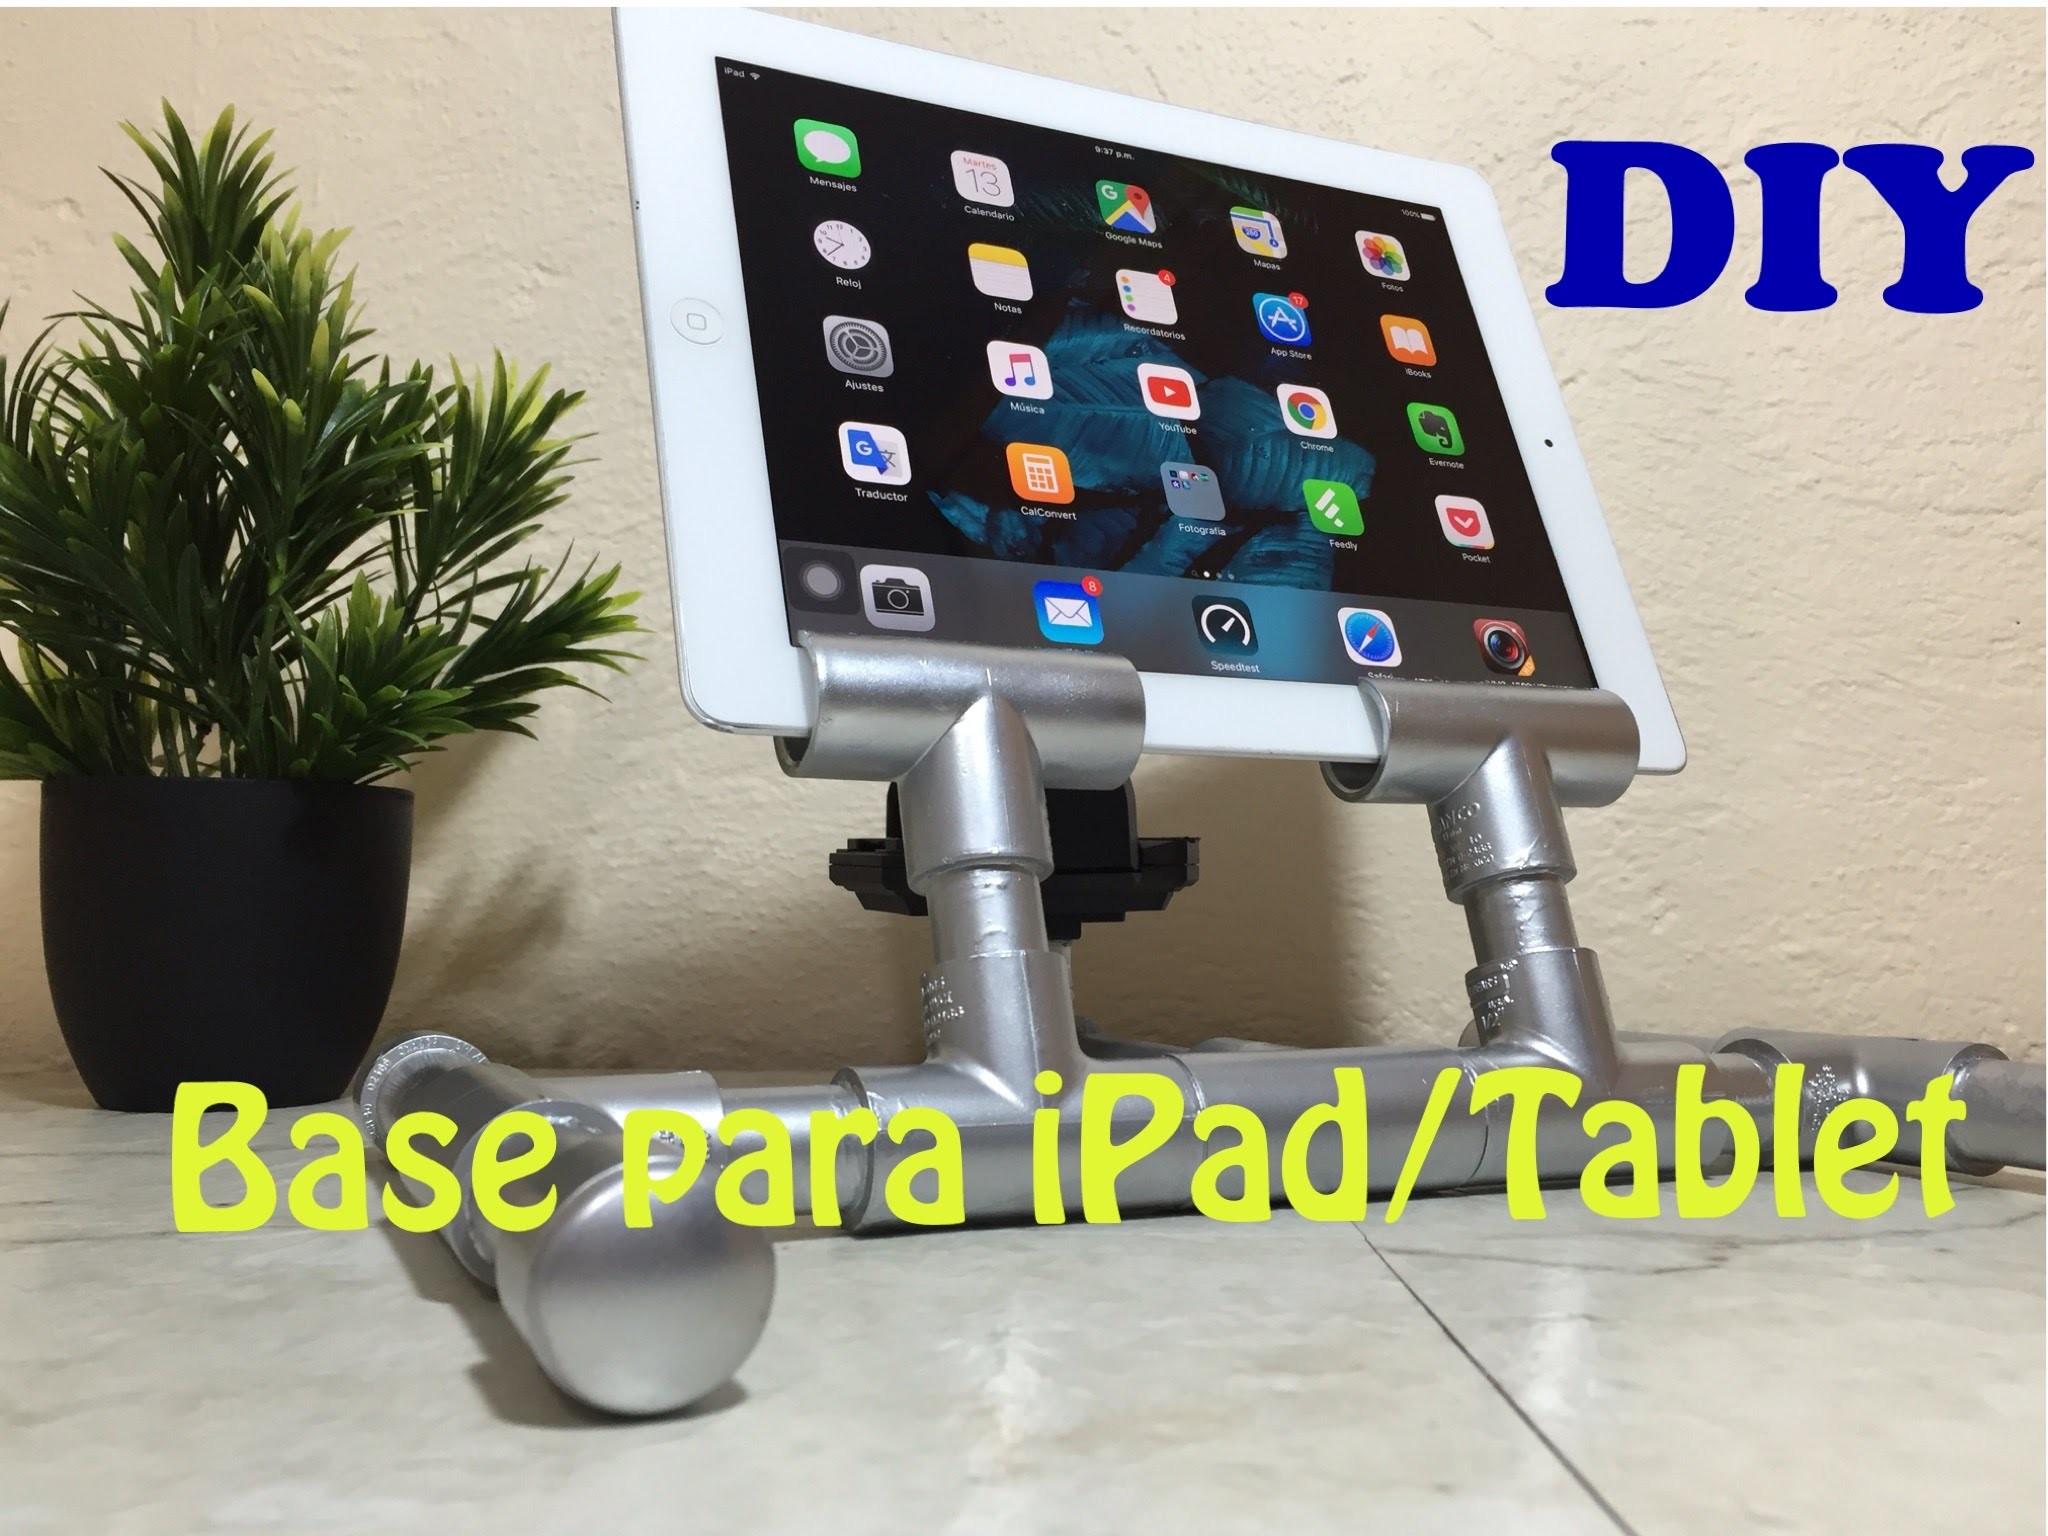 Base Economica DIY para iPad. Tablet || Doble Proposito Loop